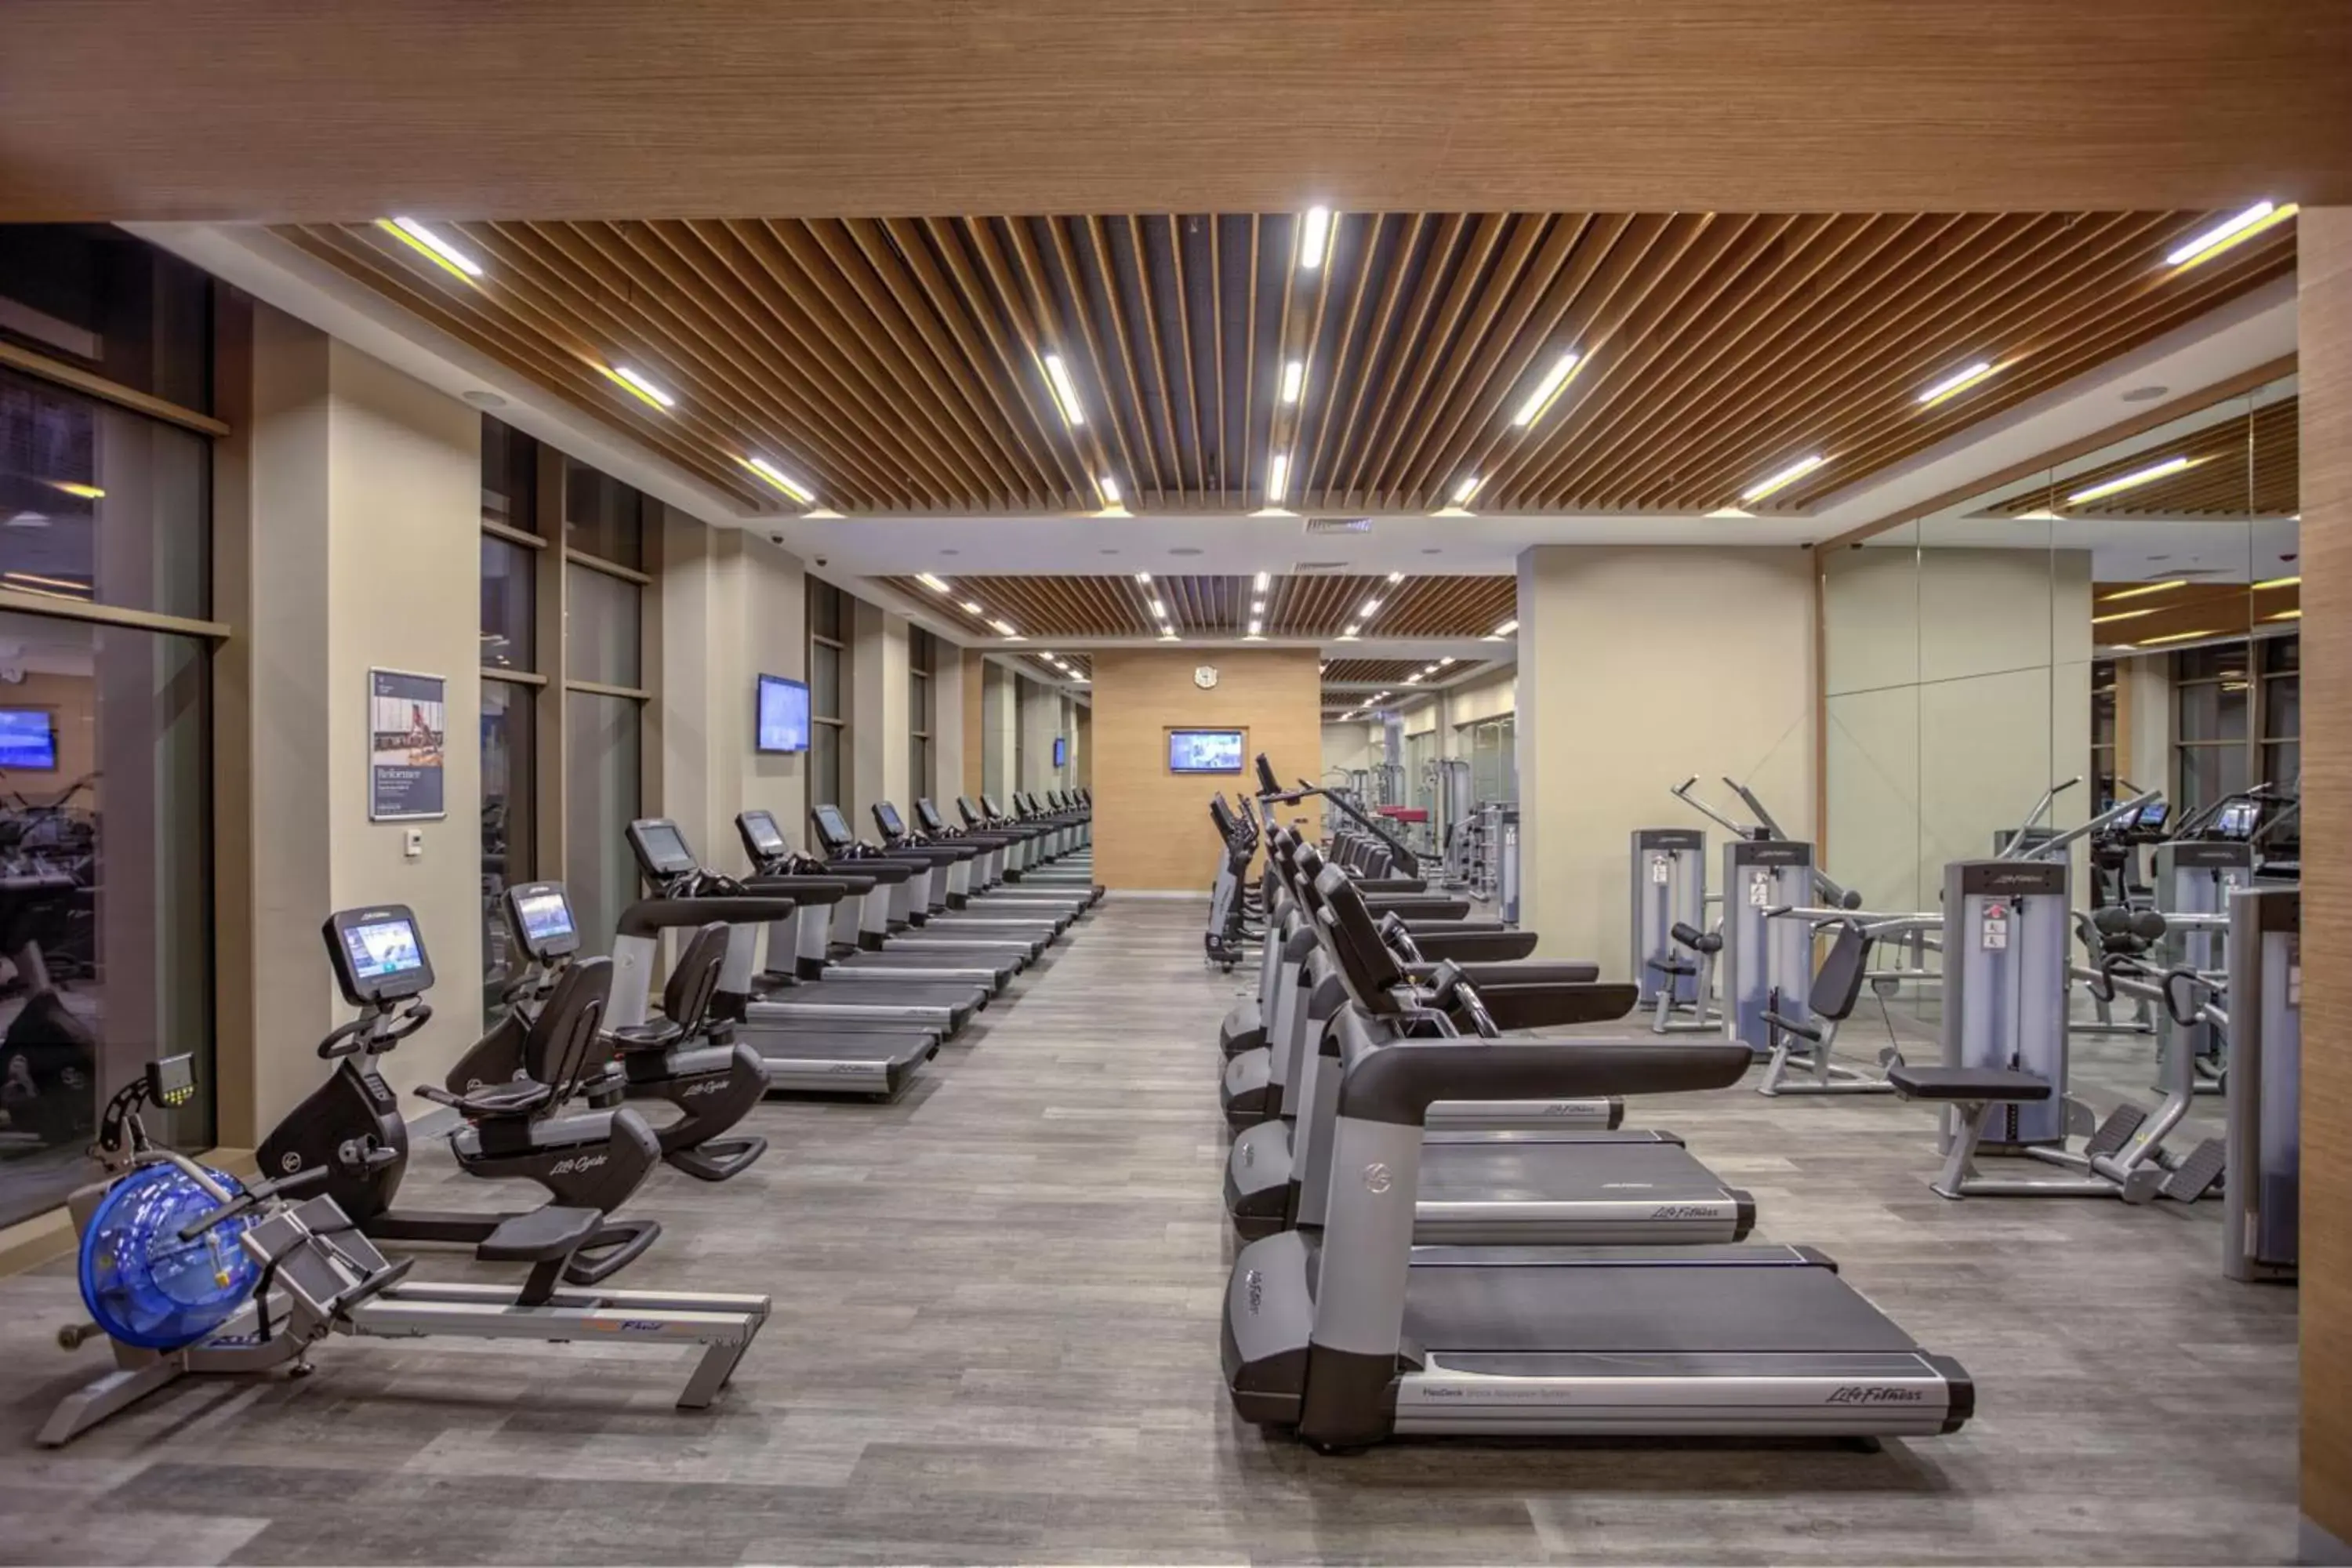 Fitness centre/facilities, Fitness Center/Facilities in Sheraton Grand Samsun Hotel